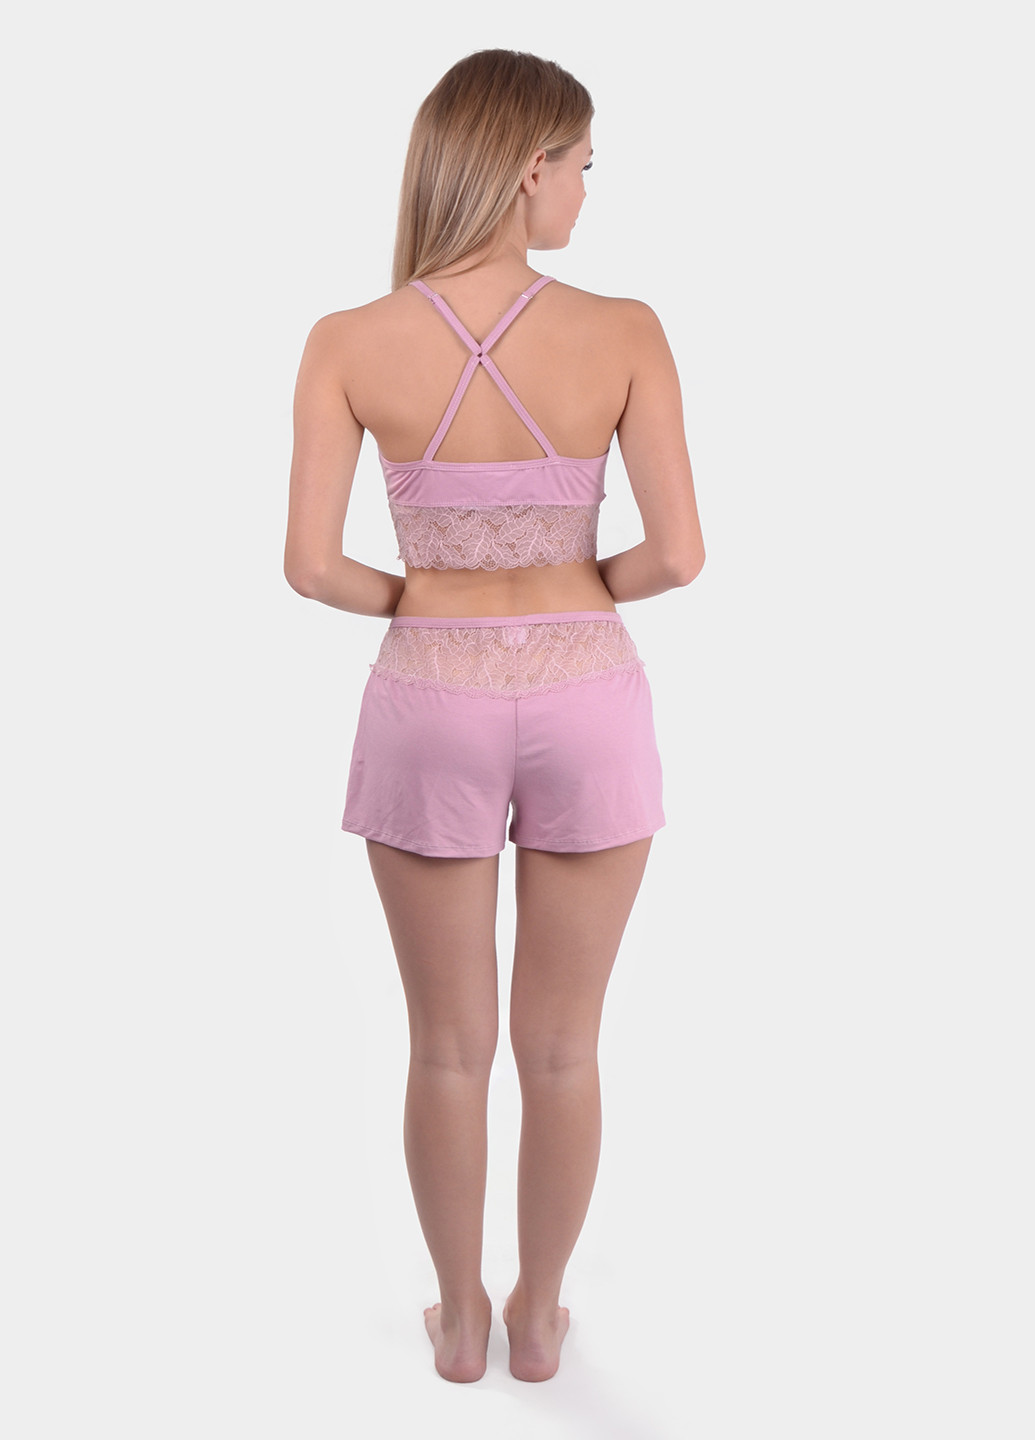 Светло-розовая всесезон пижама (топ, шорты) майка + шорты NEL